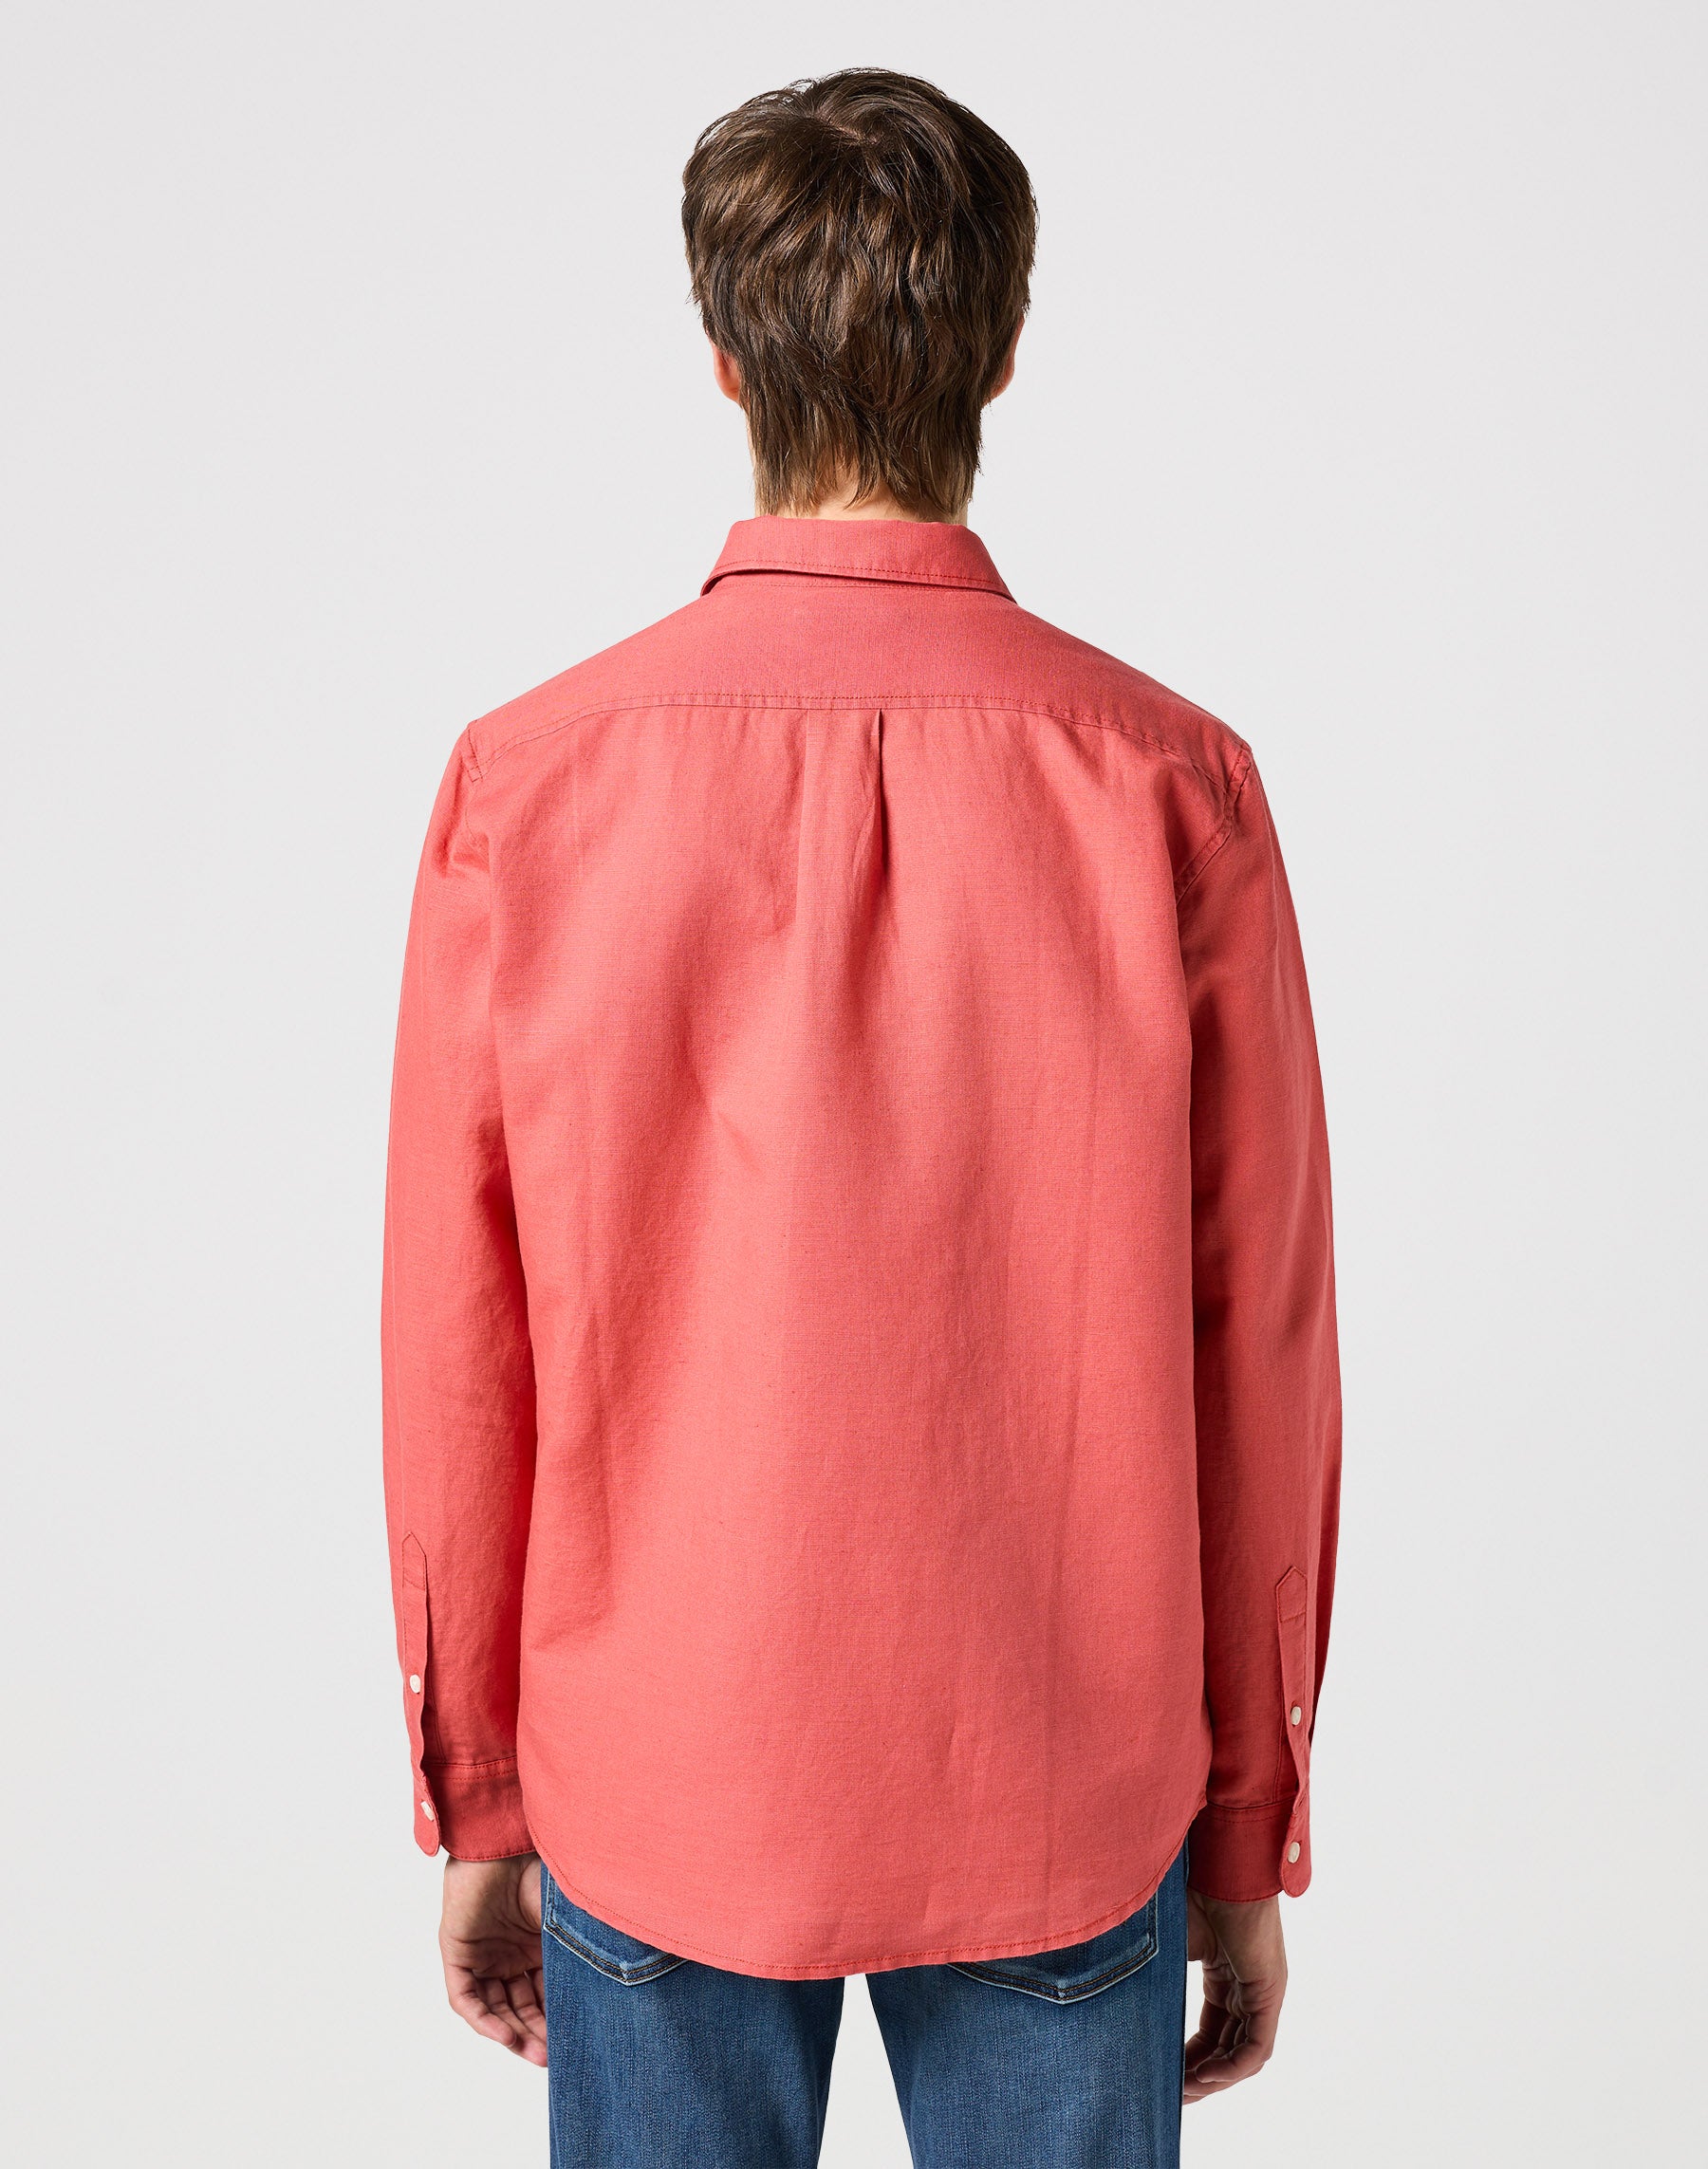 One Pocket Shirt in Burnt Sienna Hemden Wrangler   